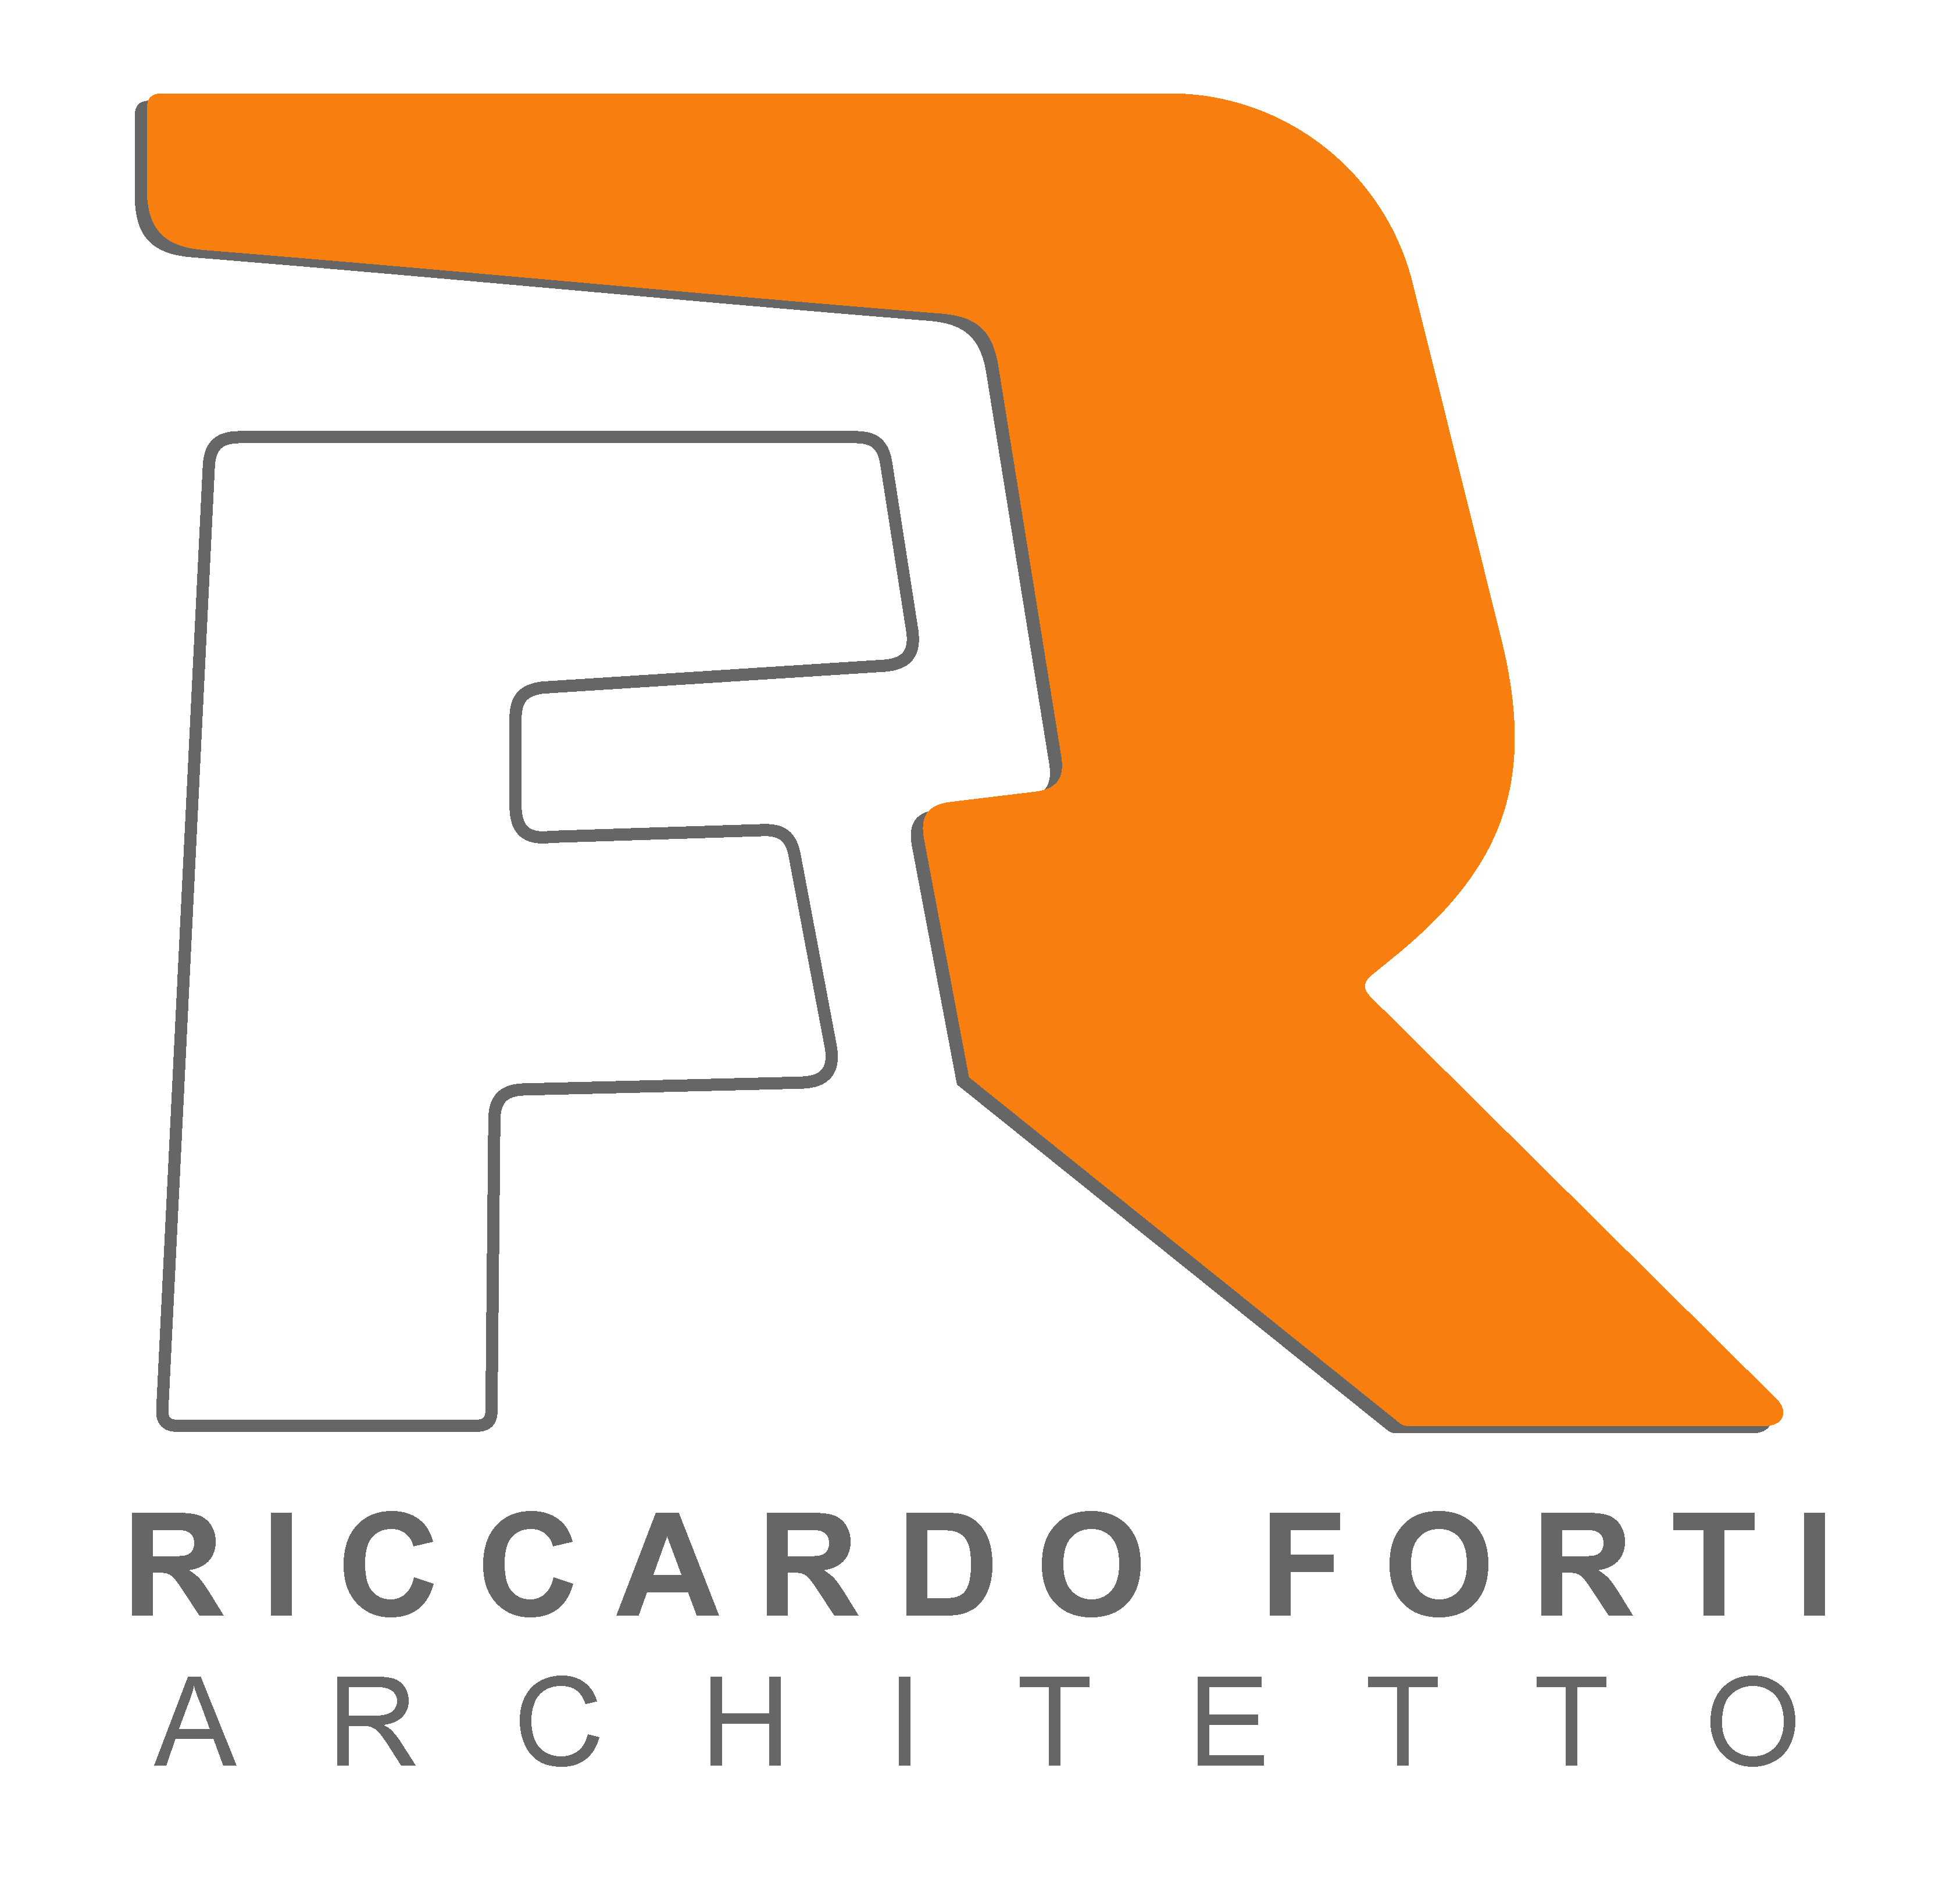 RICCARDO FORTI ARCHITETTO